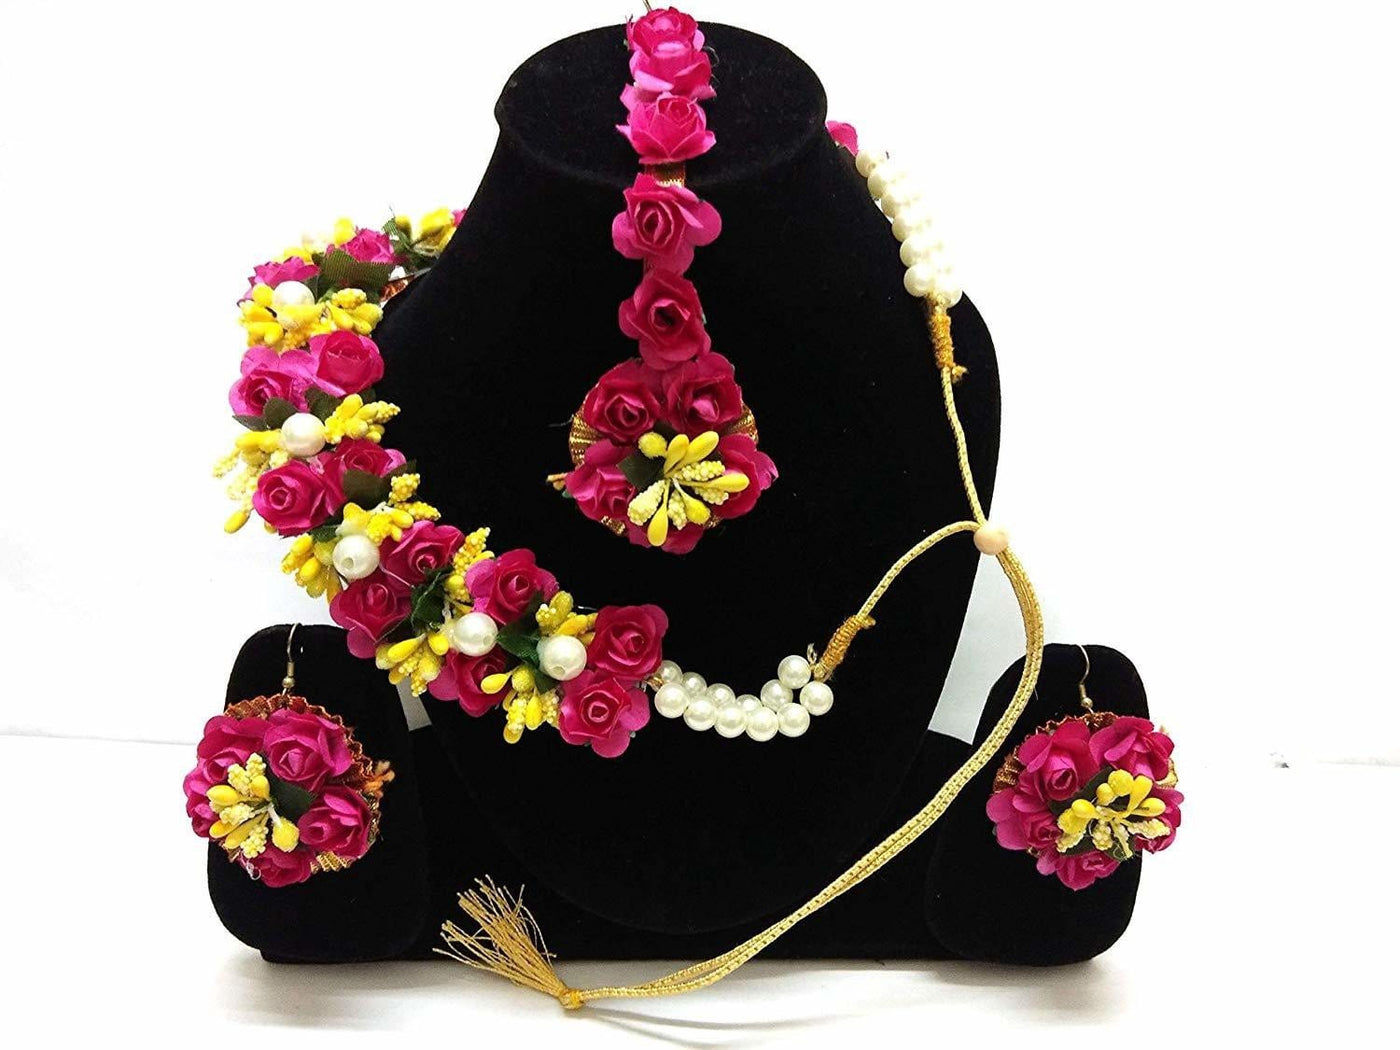 Lamansh Bridal Flower Jewellery set - Lamansh